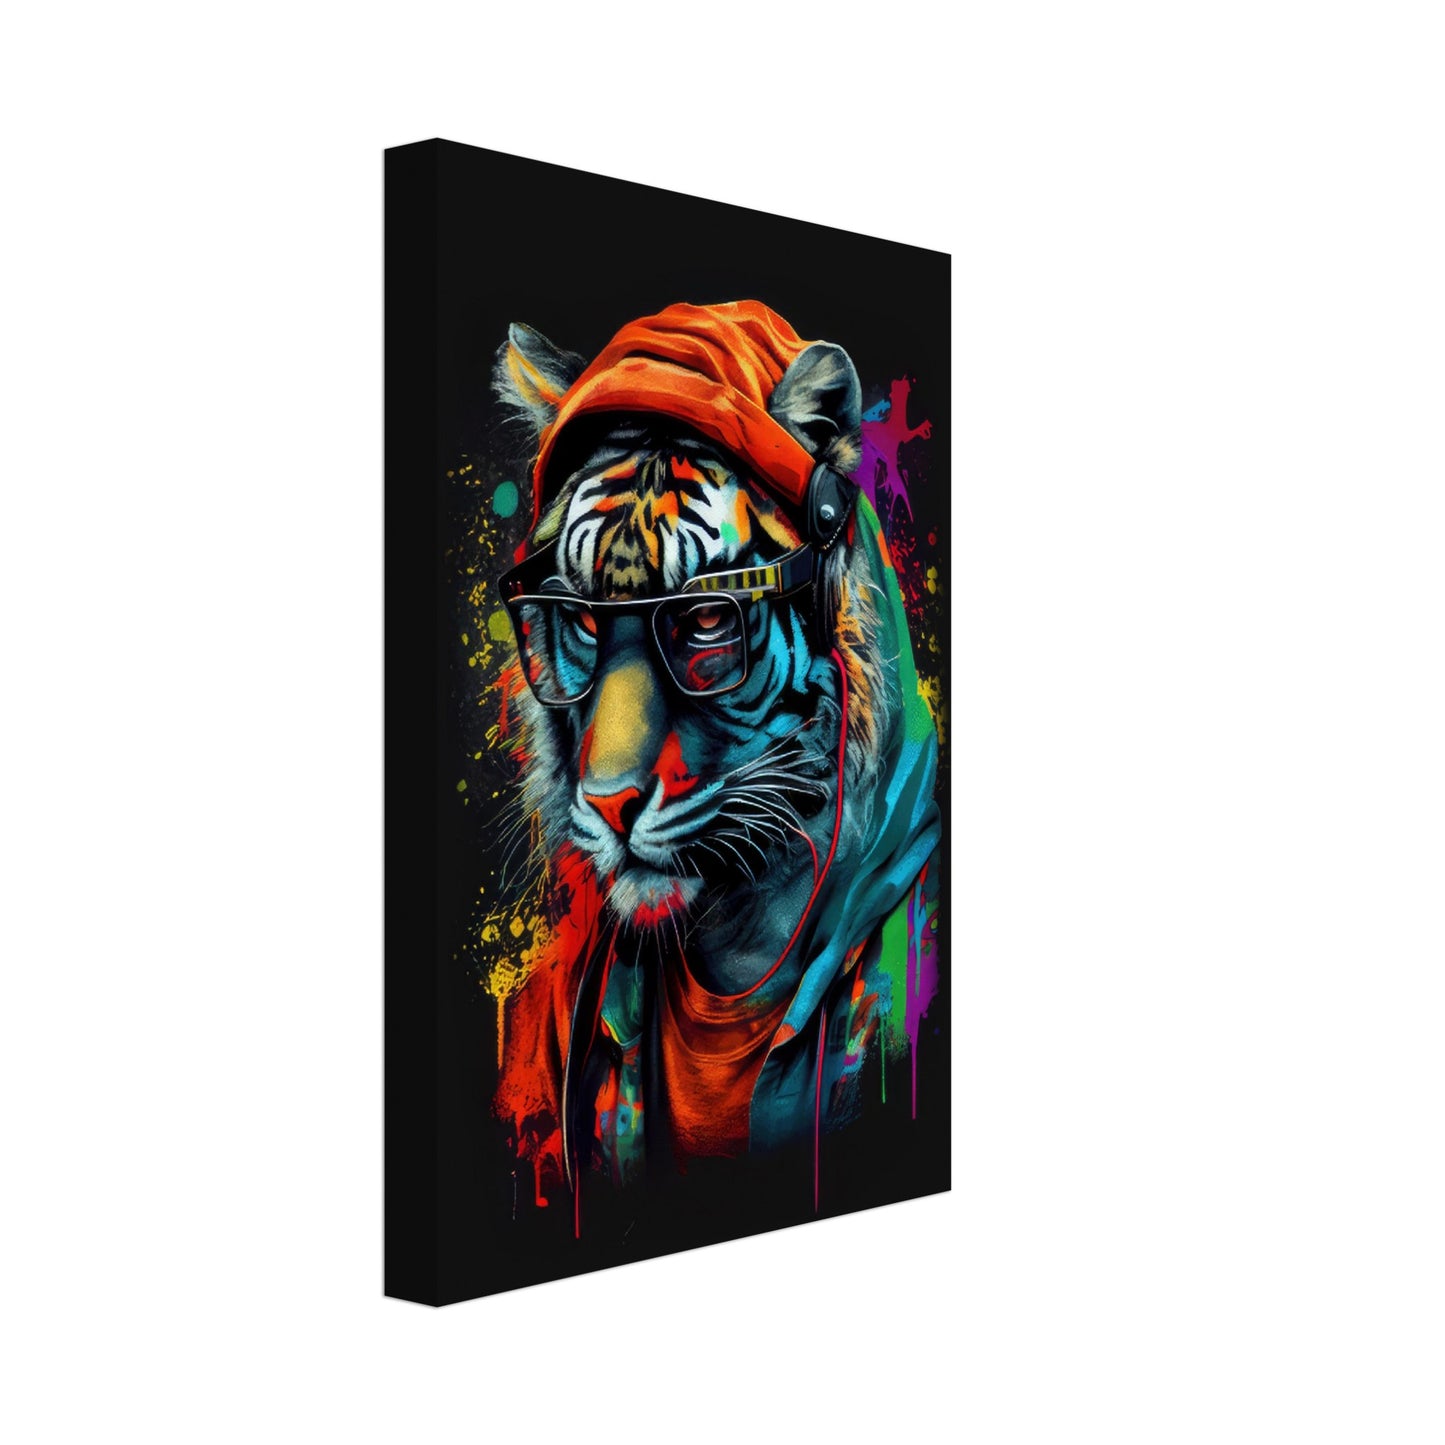 Striking Stripes - Tiger Wandbild - Crazy Wildlife Leinwand ColorWorld im Hochformat - Coole Tiere & Animals Kunstdruck